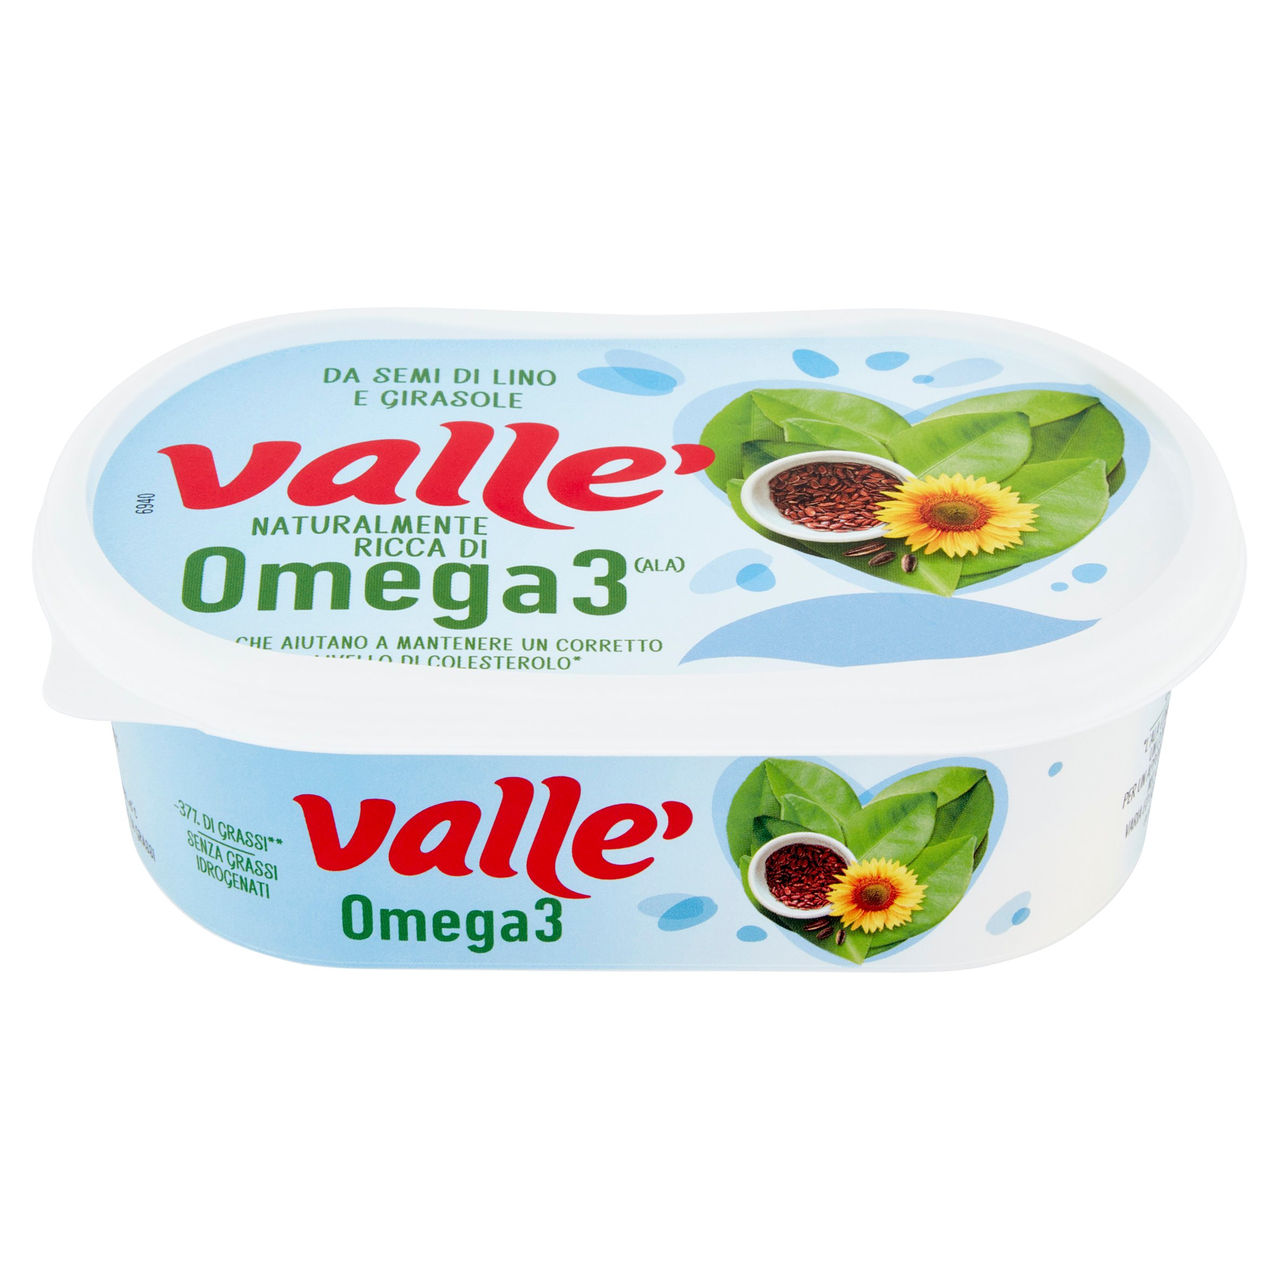 Valle' Omega 3 250 g